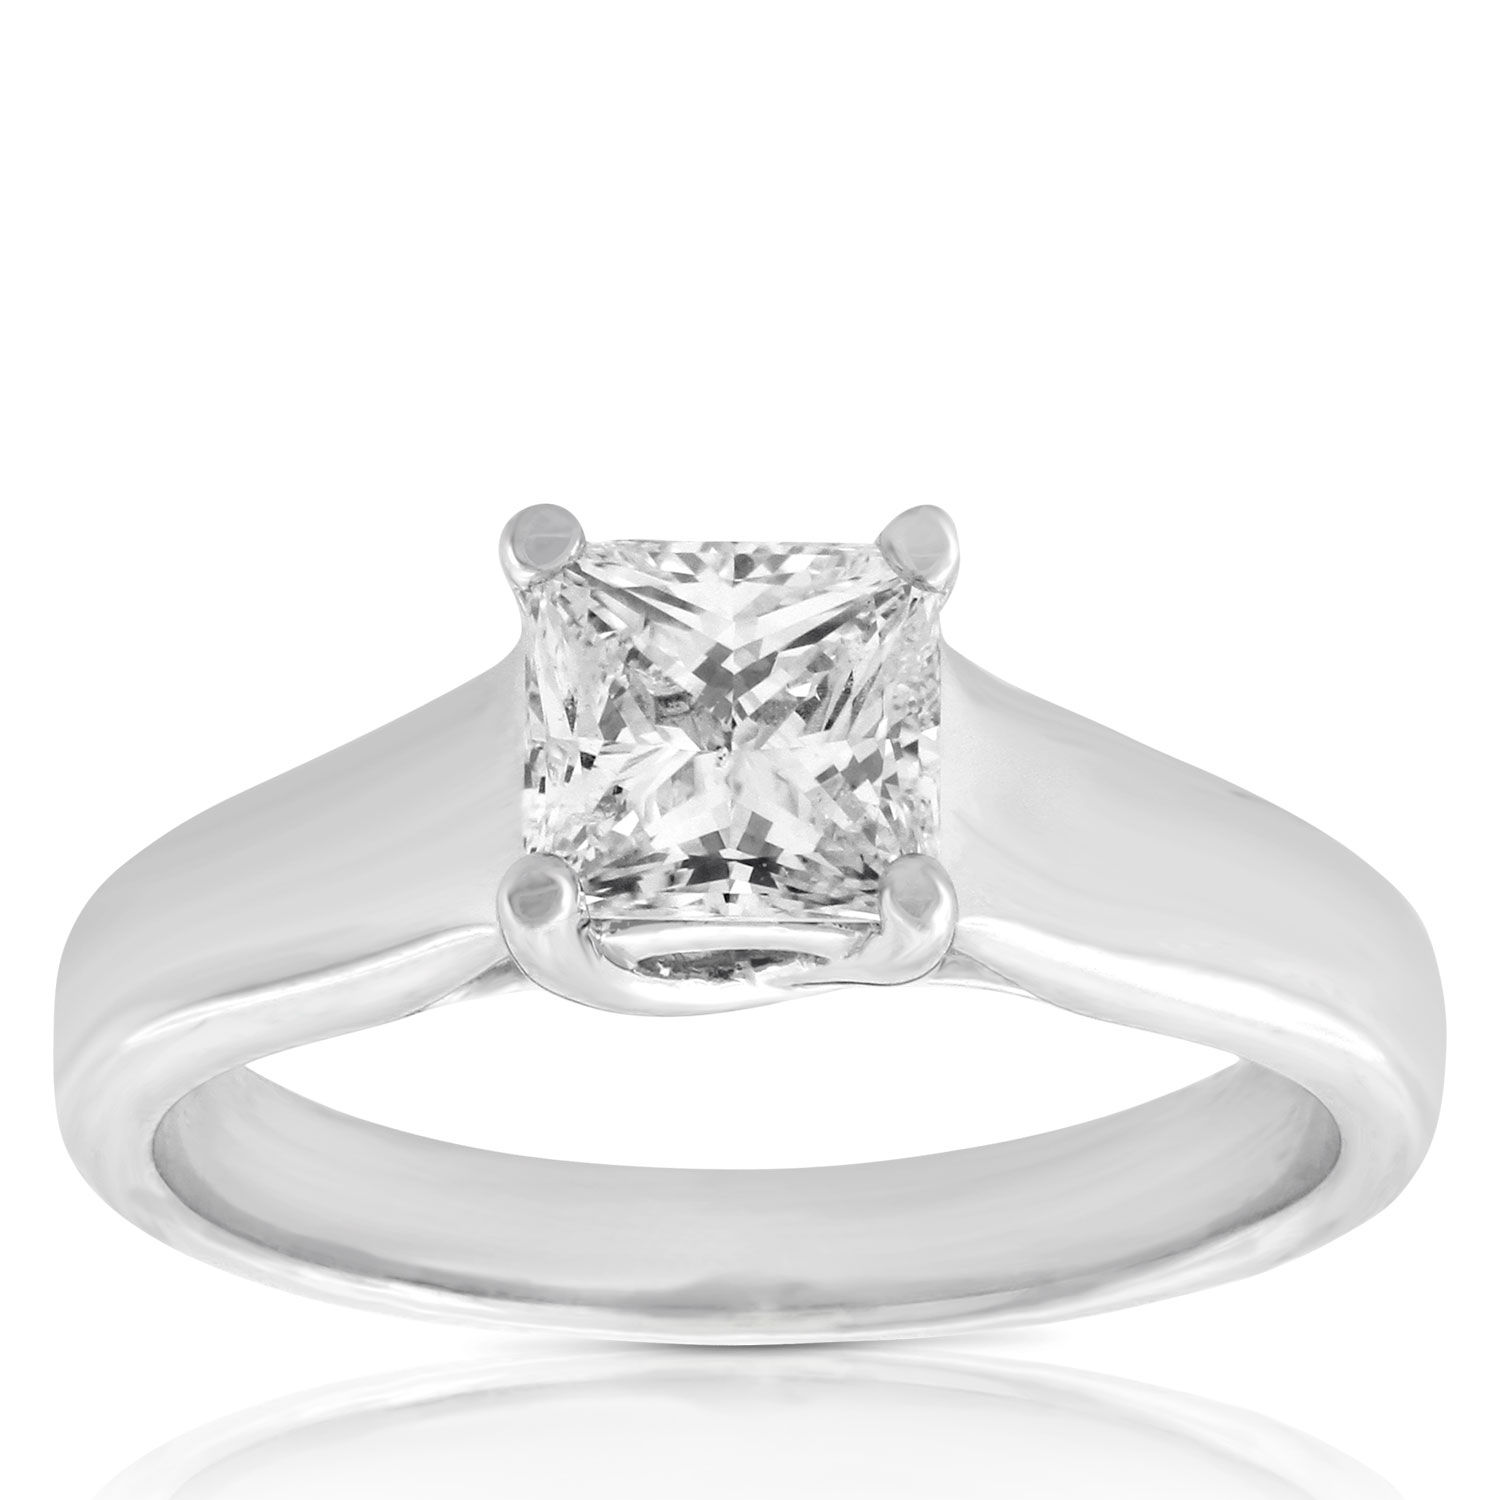 Ikuma Canadian Princess Cut Diamond Solitaire Ring 14K, 1 ct. | Ben ...